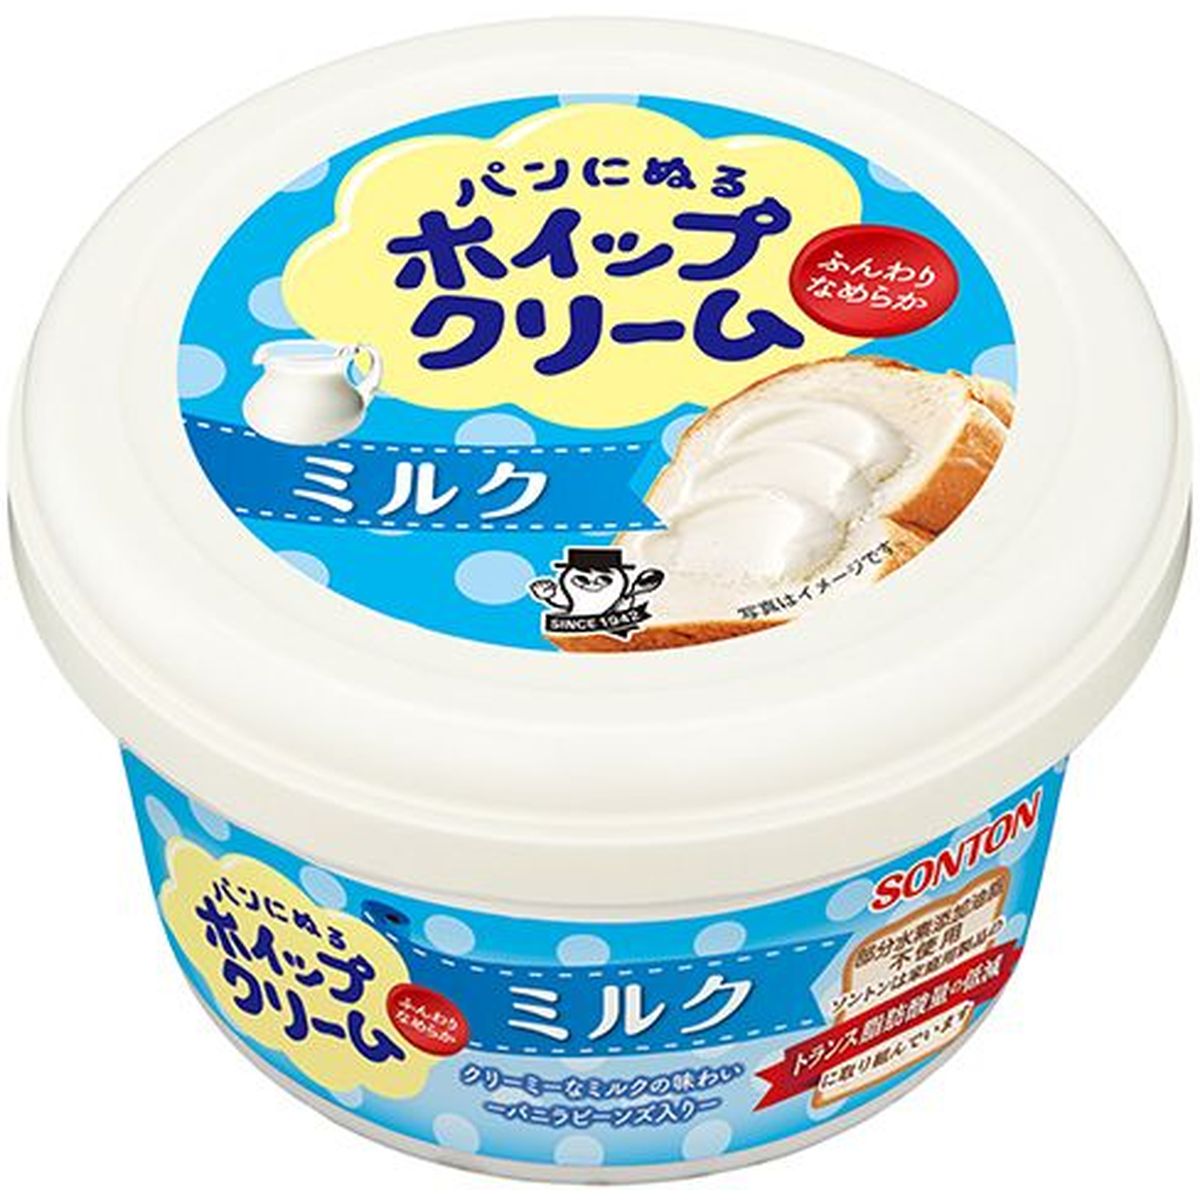 【6個入リ】ソントン パンニヌルホイップクリーム ミルク 150g